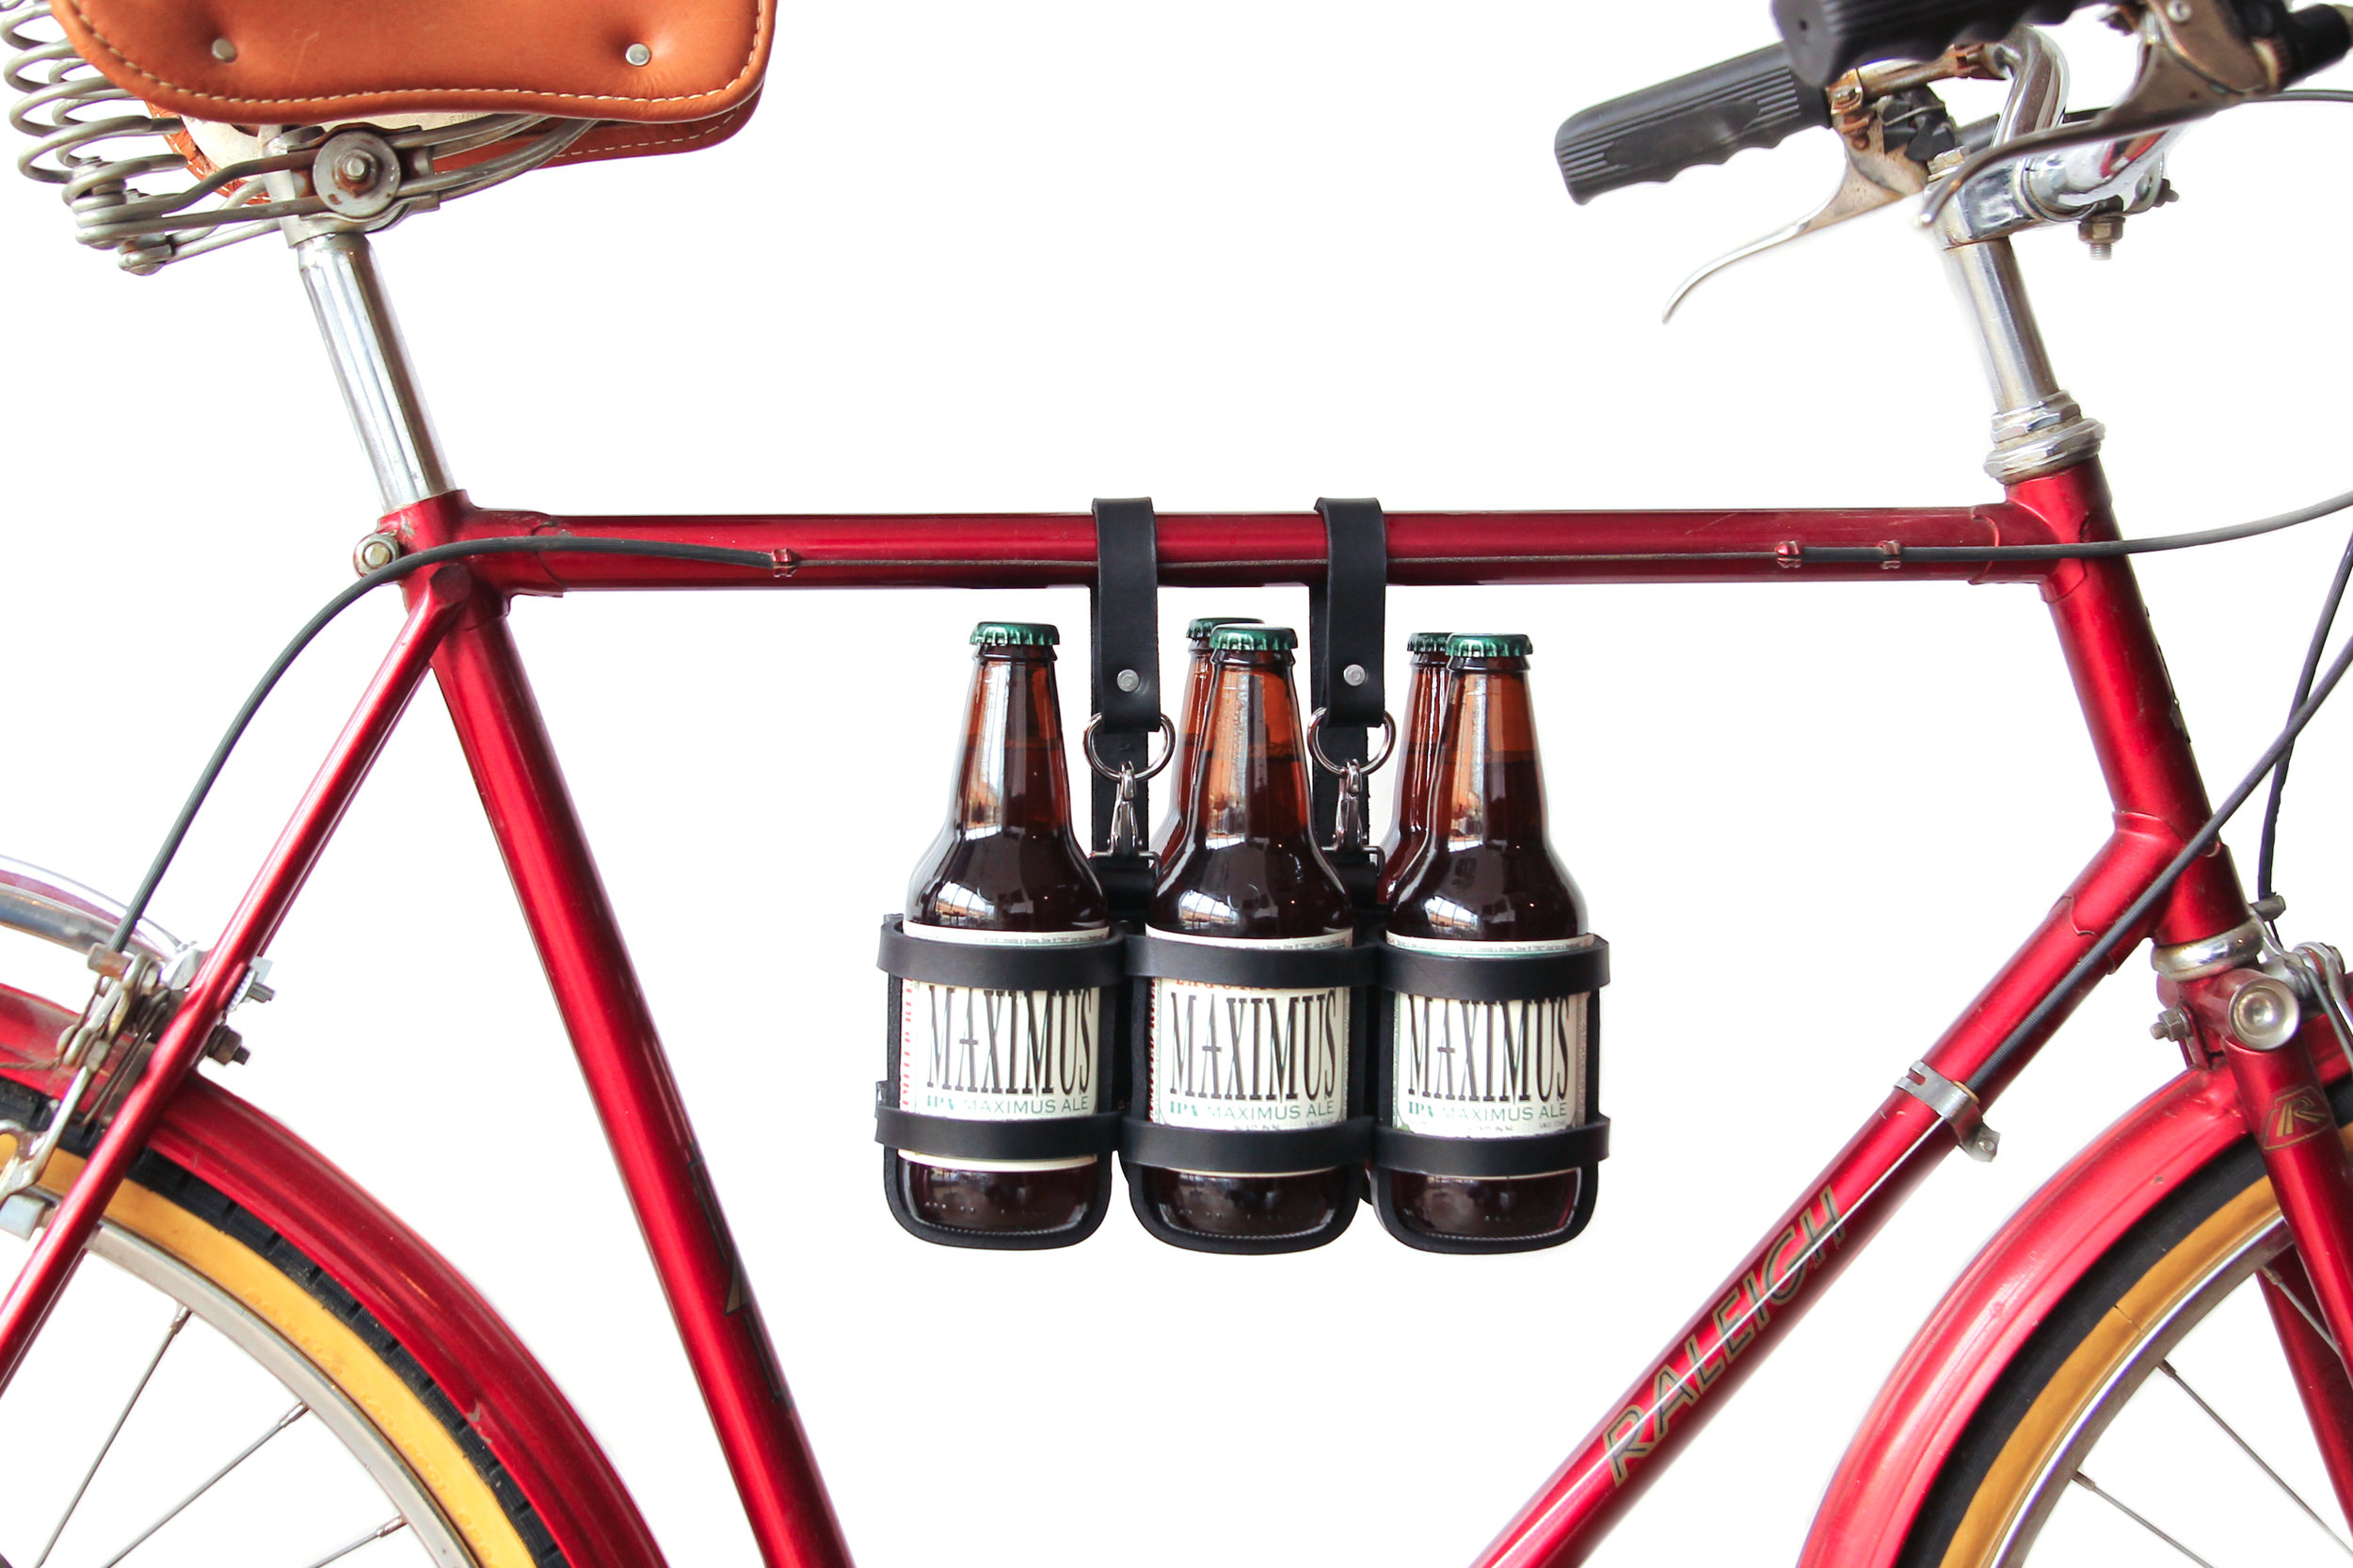 Jay Teske bicycle beer carrier. Photo by Kelli Williams.